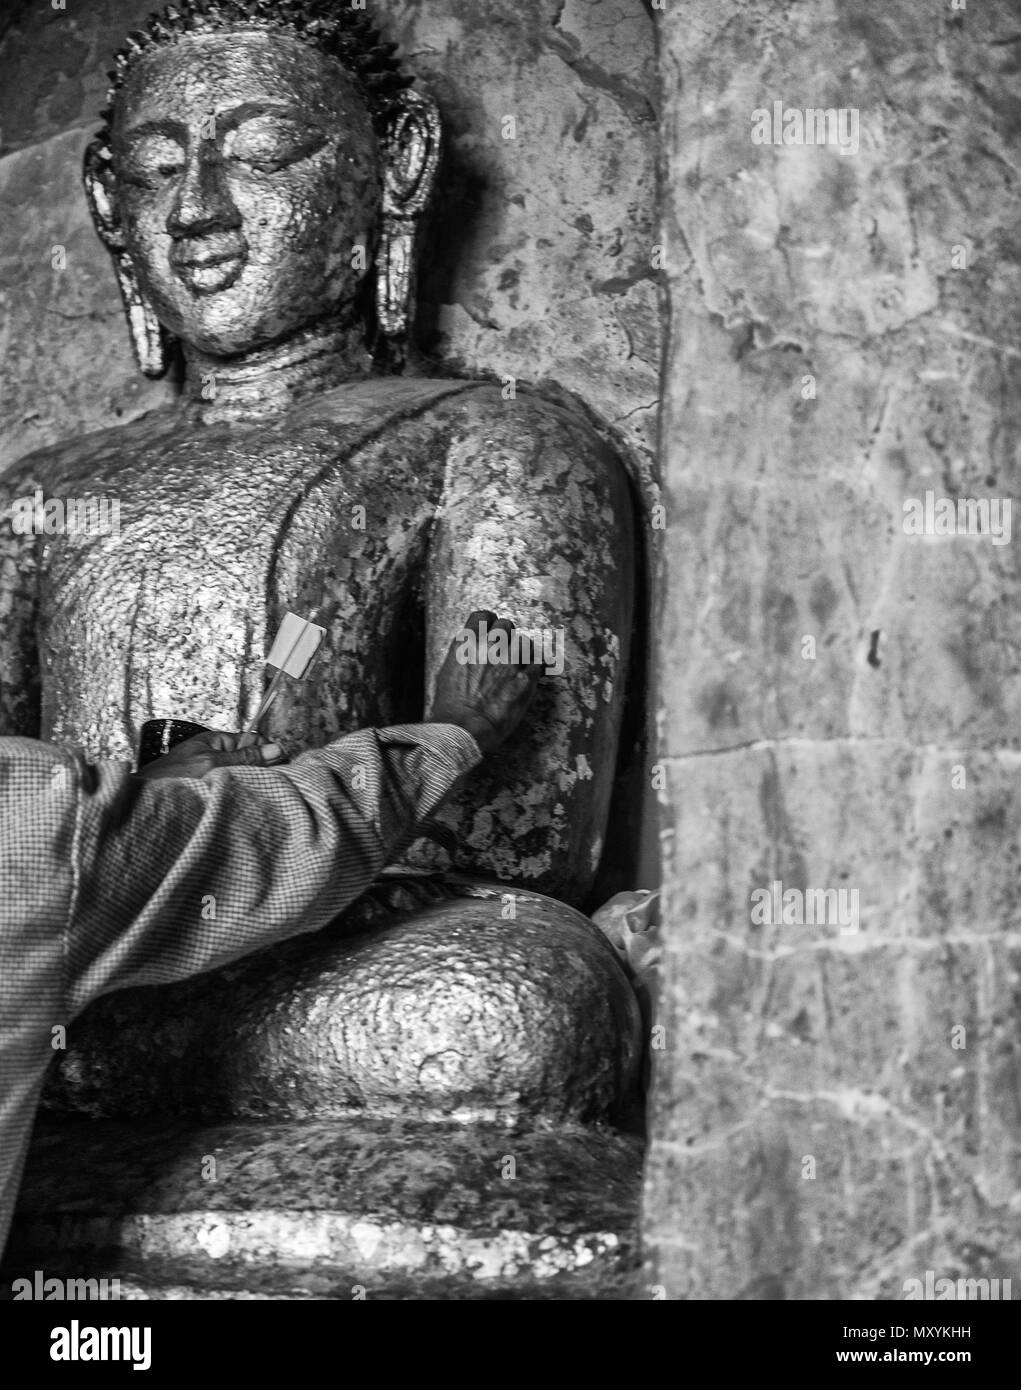 Mettre de l'or pur à Bouddha statue, Bagan-Myanmar Banque D'Images